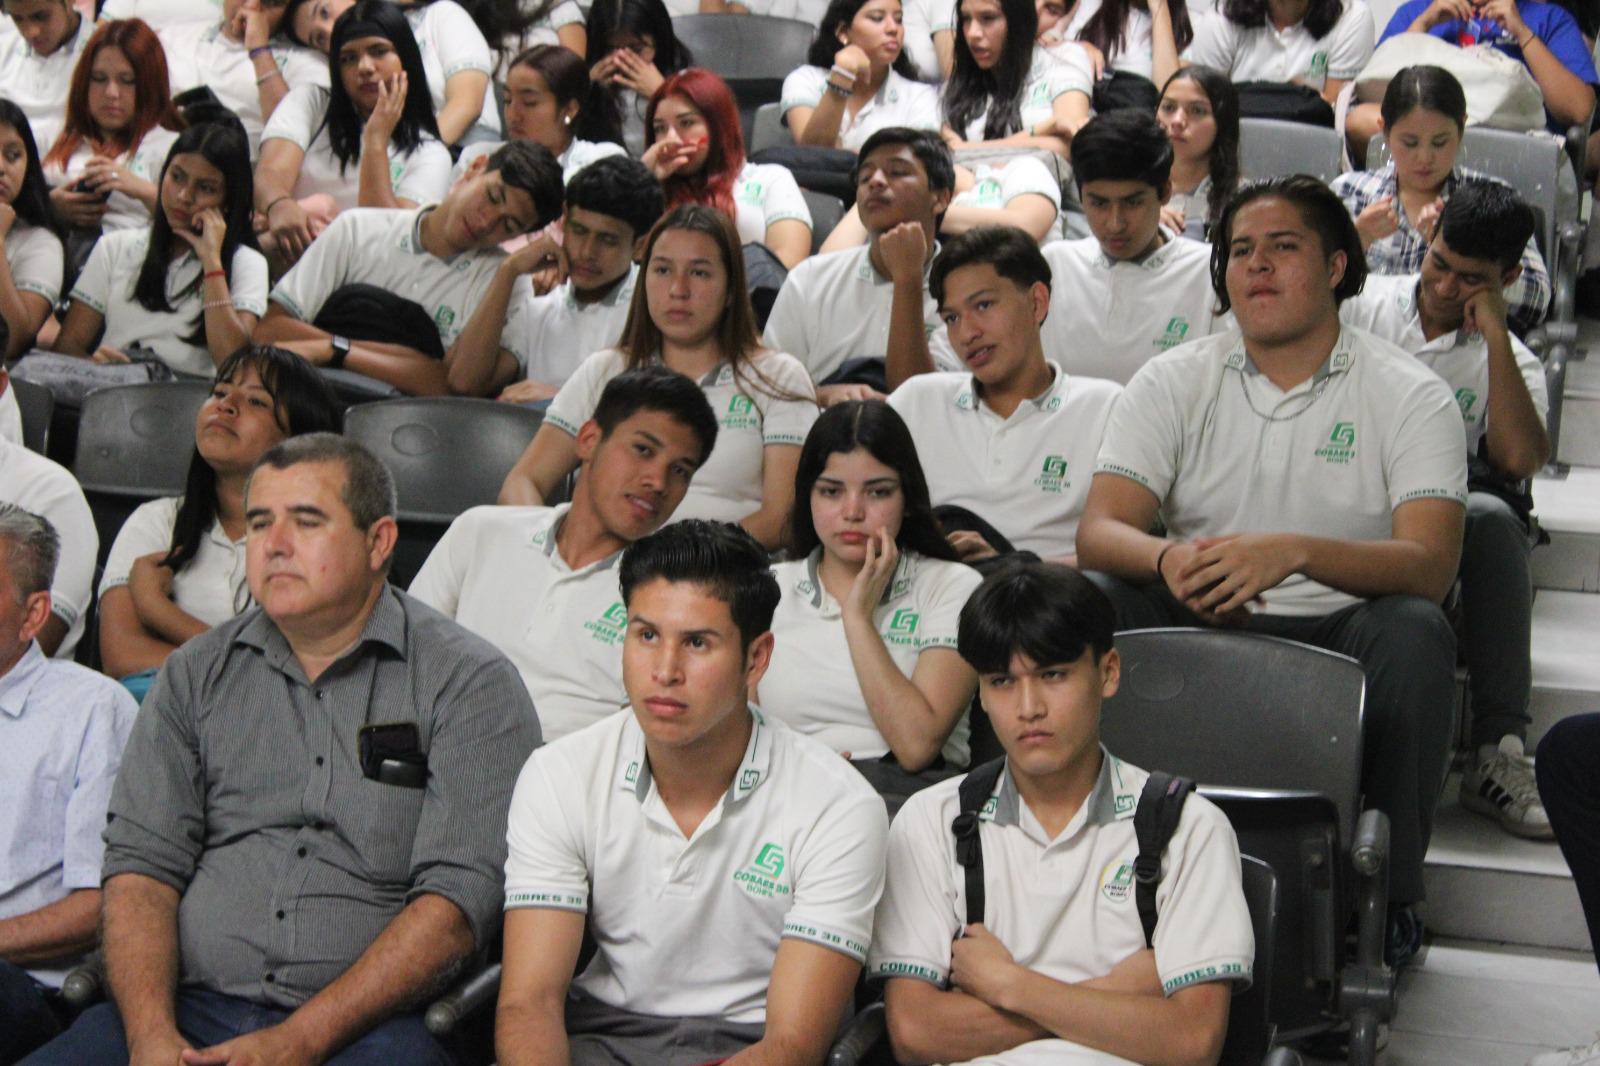 $!Impulsa Ricardo Velarde a soñar en grande a estudiantes del Cobaes 38